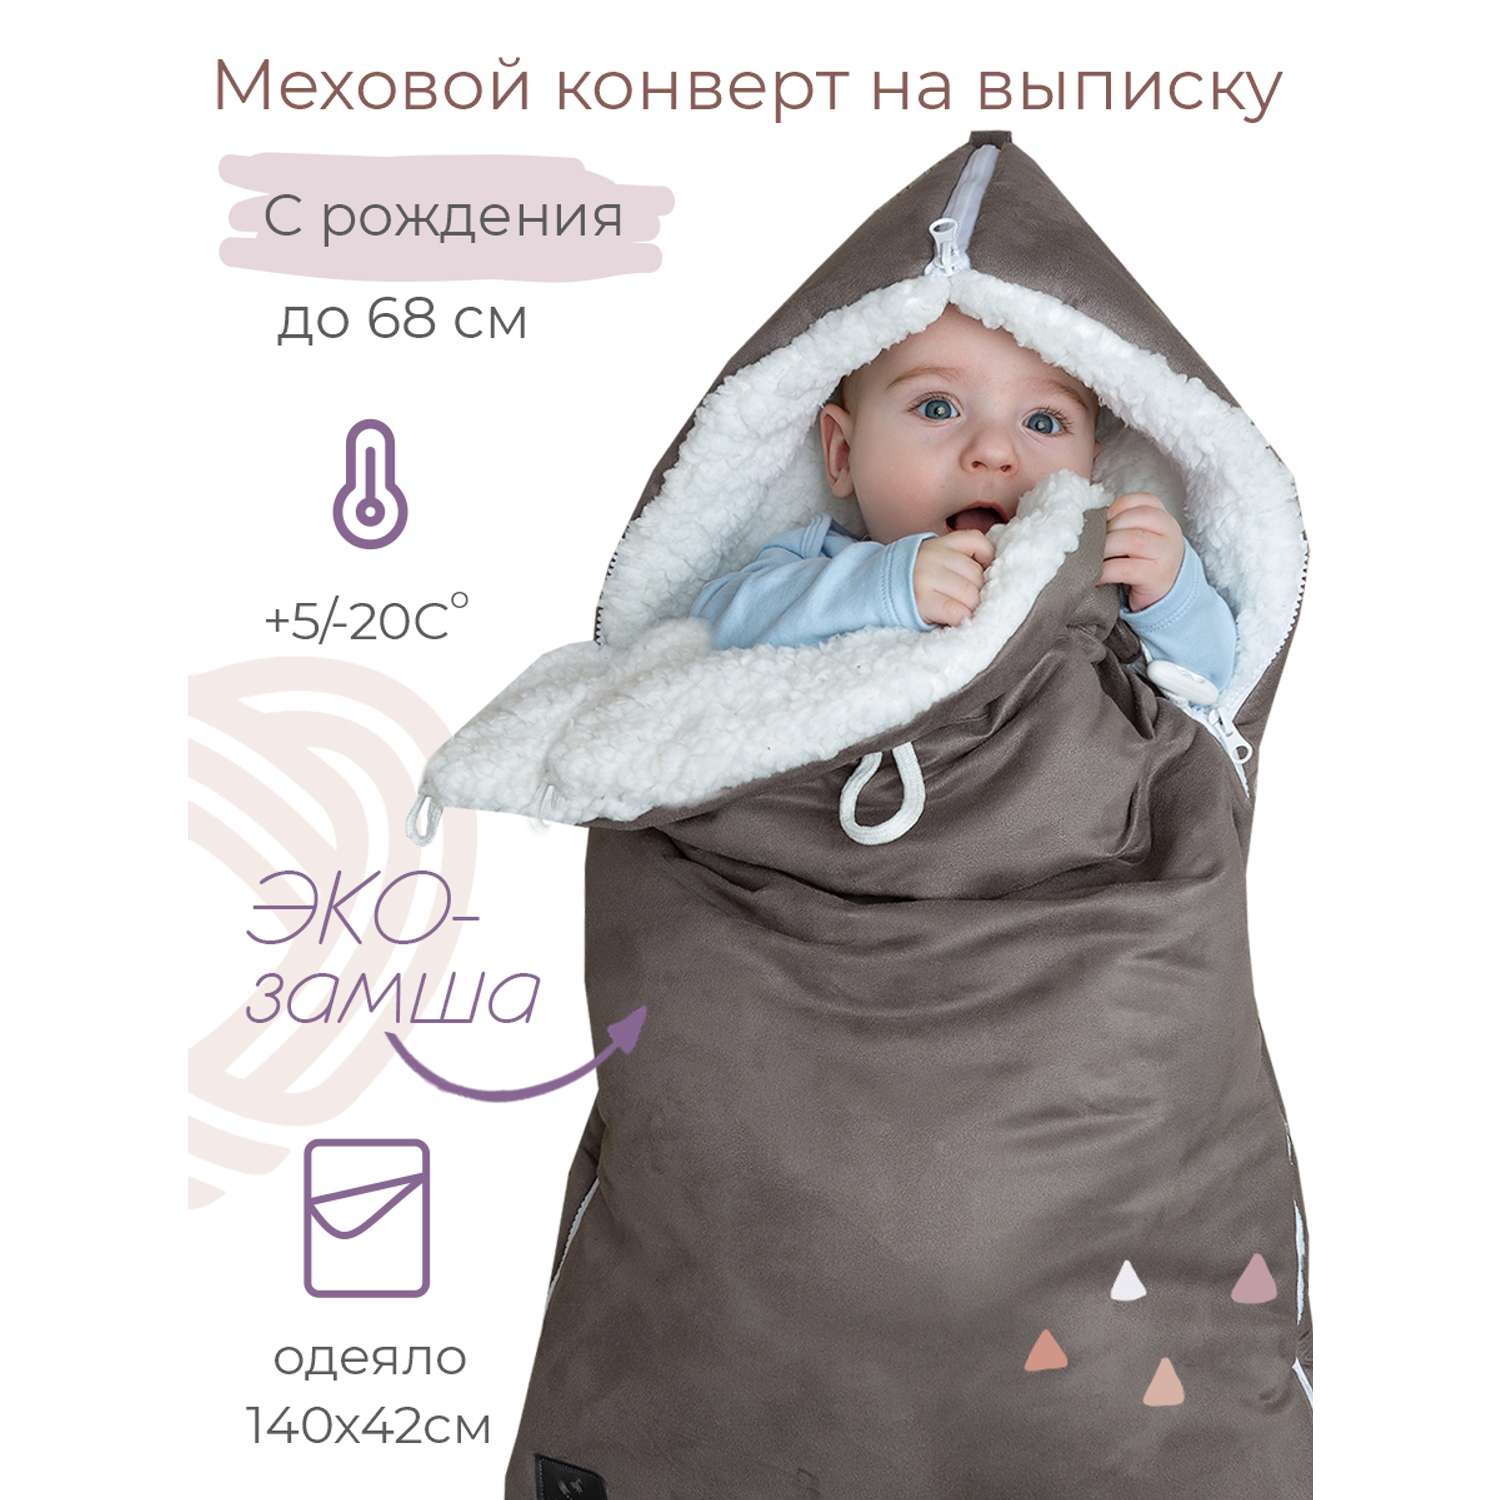 Конверт на выписку inlovery для новорожденного Нордик/серый - фото 1